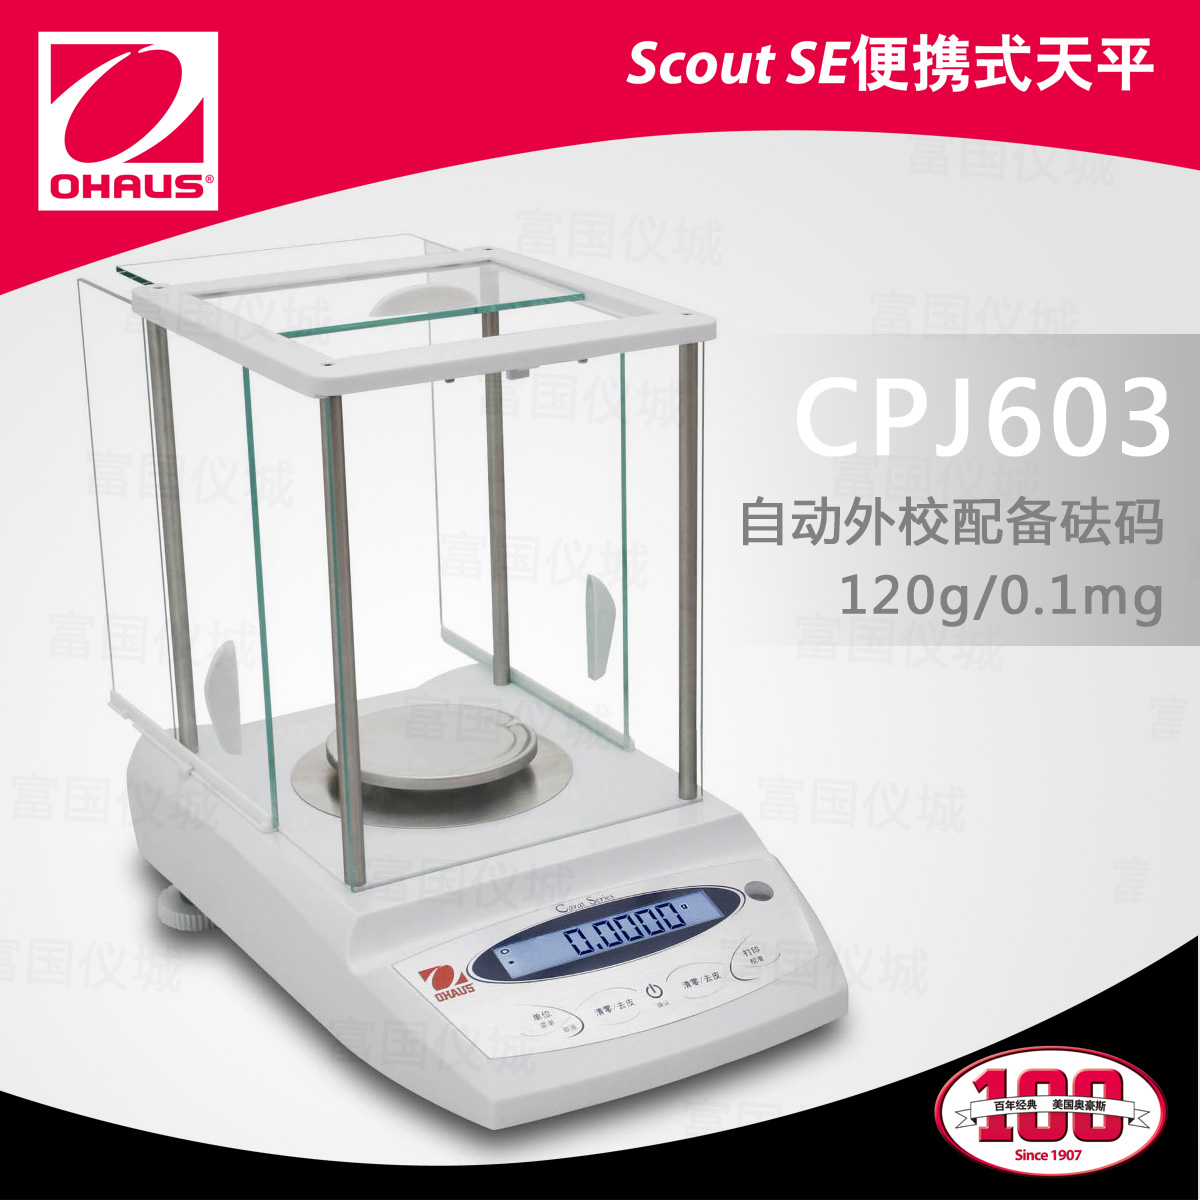 CPJ603 珠宝天平(外校)(120g/0.1mg)万分之一电子天平